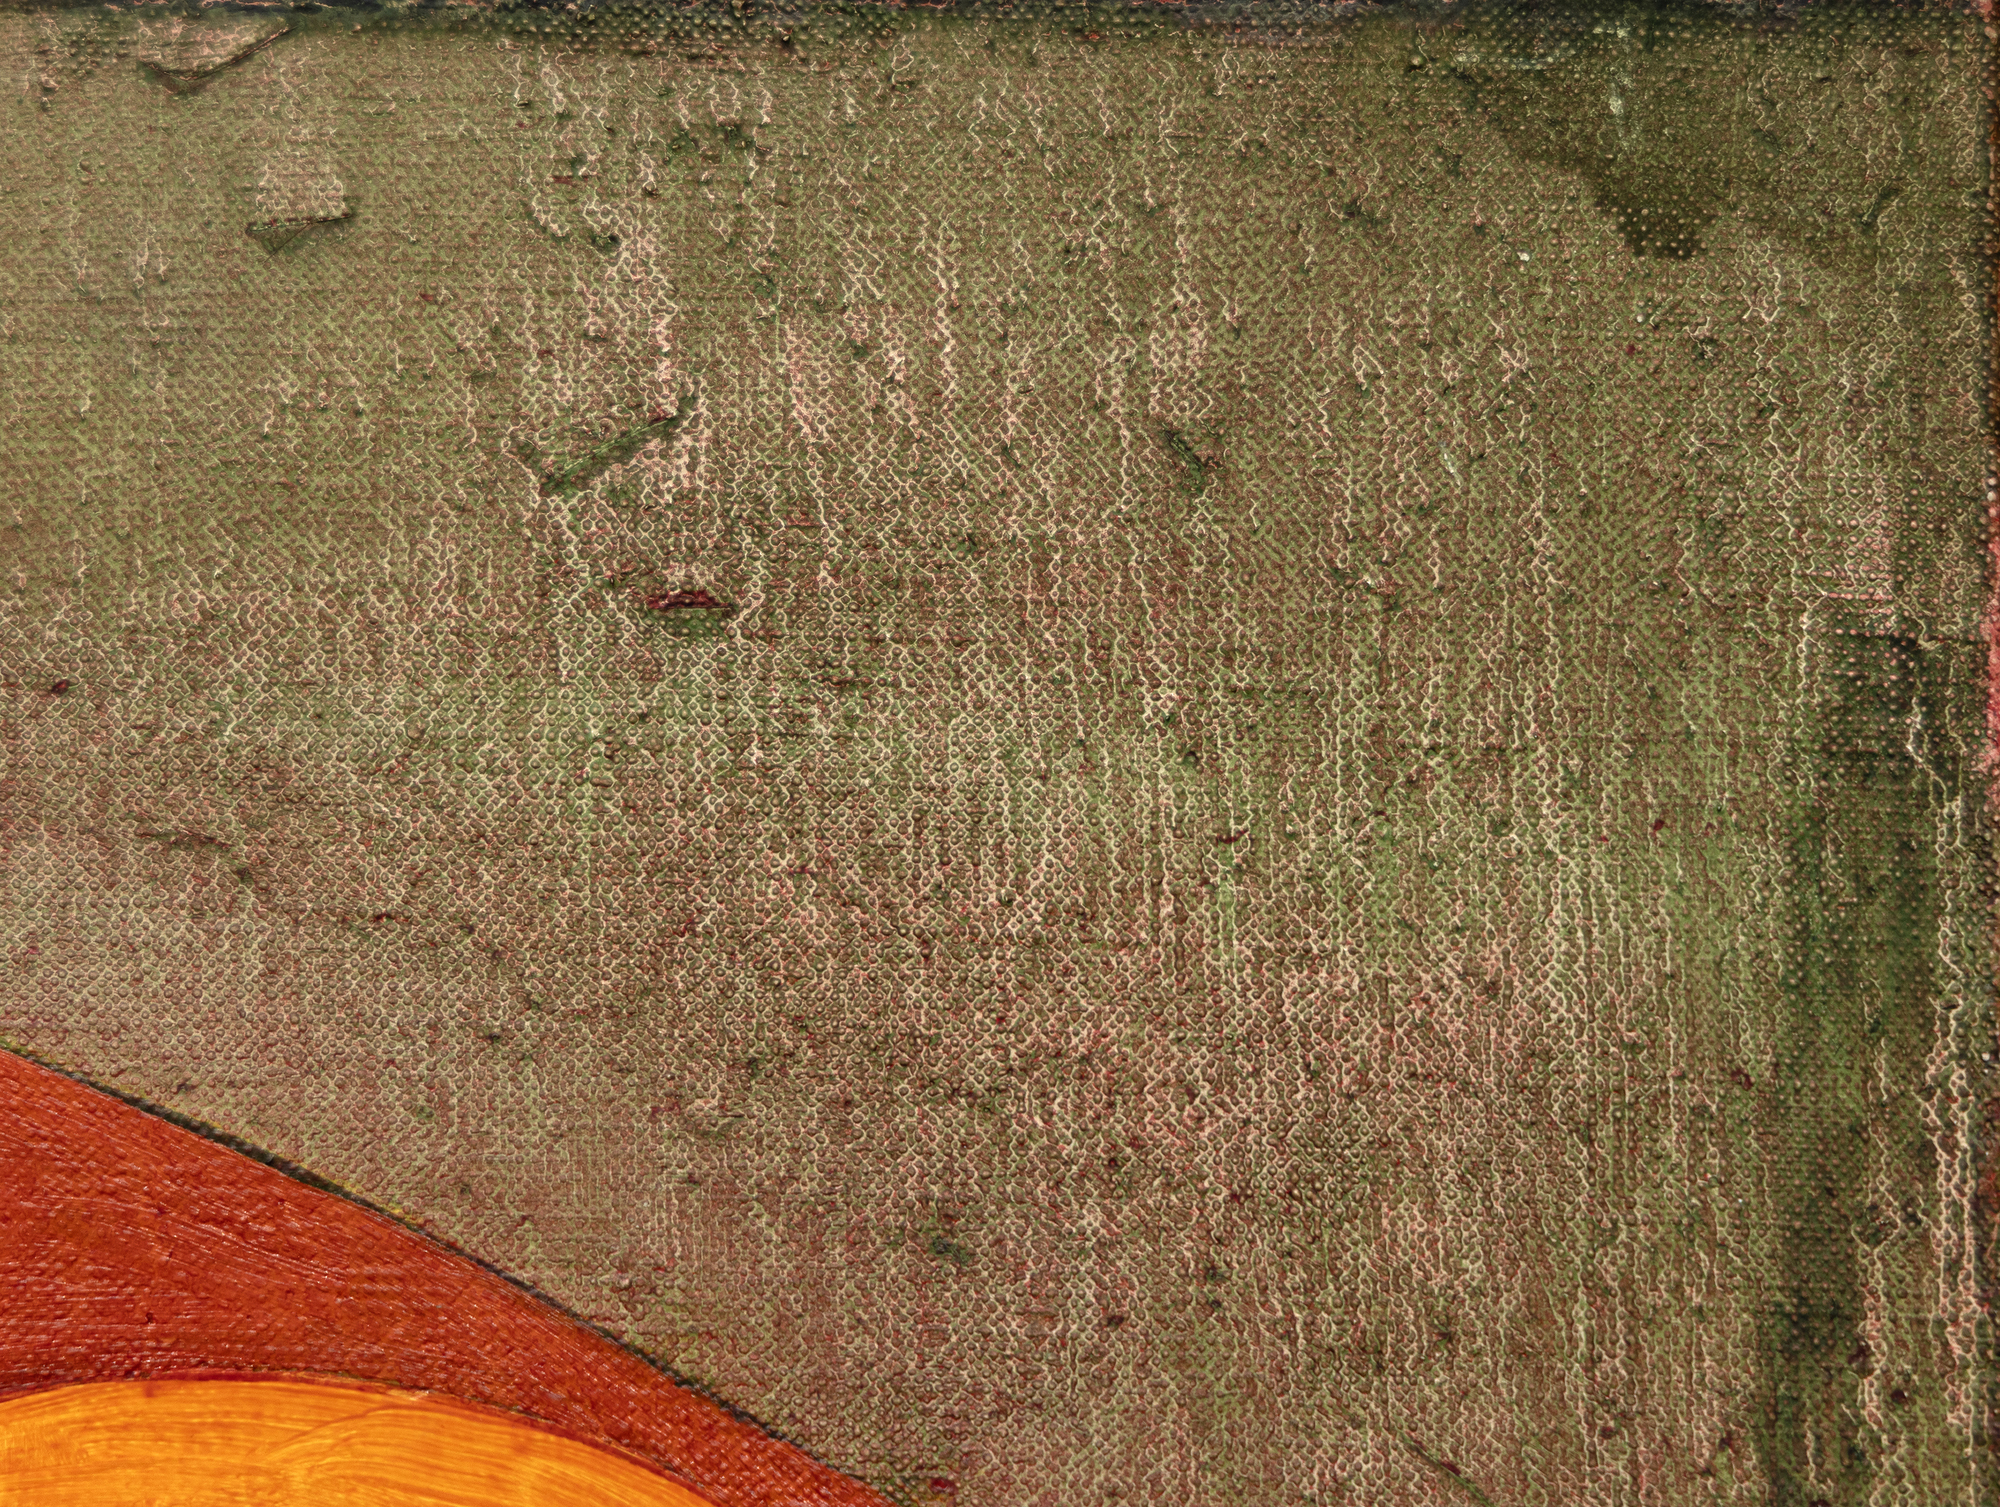 תומאס נוזקובסקי נולד ב-1944 ויצר ציורים קטנים בגוון עשיר המשקפים את ההשפעות הדיכוטומיות של האקספרסיוניסטים המופשטים ופליטי הבאוהאוס שעמם למד באיחוד קופר. באמצעות מברשת קטנה, הטיפול שלו כולל גירוד ושפשוף צבע בדרכים שנרשמות בעבודה המוגמרת. הוא פיתח אוצר מילים ייחודי ורחב היקף לפריסת צורות גיאומטריות דמויי ביומורפיות בערכות צבעים מגוונות ומגוון רחב של אסוציאציות: ריצוף אריחים, לאשכולות תאים, לארכיטקטורה ולחלל החיצון. לעתים קרובות, הם מזוקקים מזיכרונותיו וחוויותיו. נוזקובסקי הגיב על הציור הספציפי הזה (ללא כותרת, 1994) ואמר כי הוא משקף את המשיכה שלו לסצינות המיתולוגיות שצוירו על לוחות חזה נדוניה של הרנסנס. הוא ביטא אותו כאחד הטובים ביותר מבין שלושה או ארבעה לוחות בגודל 15 אינץ' x 30 אינץ' בסדרה זו. נוזקובסקי טופל במשך שנים רבות על ידי גלריית פייס. הוא נפטר בשנת 2019.